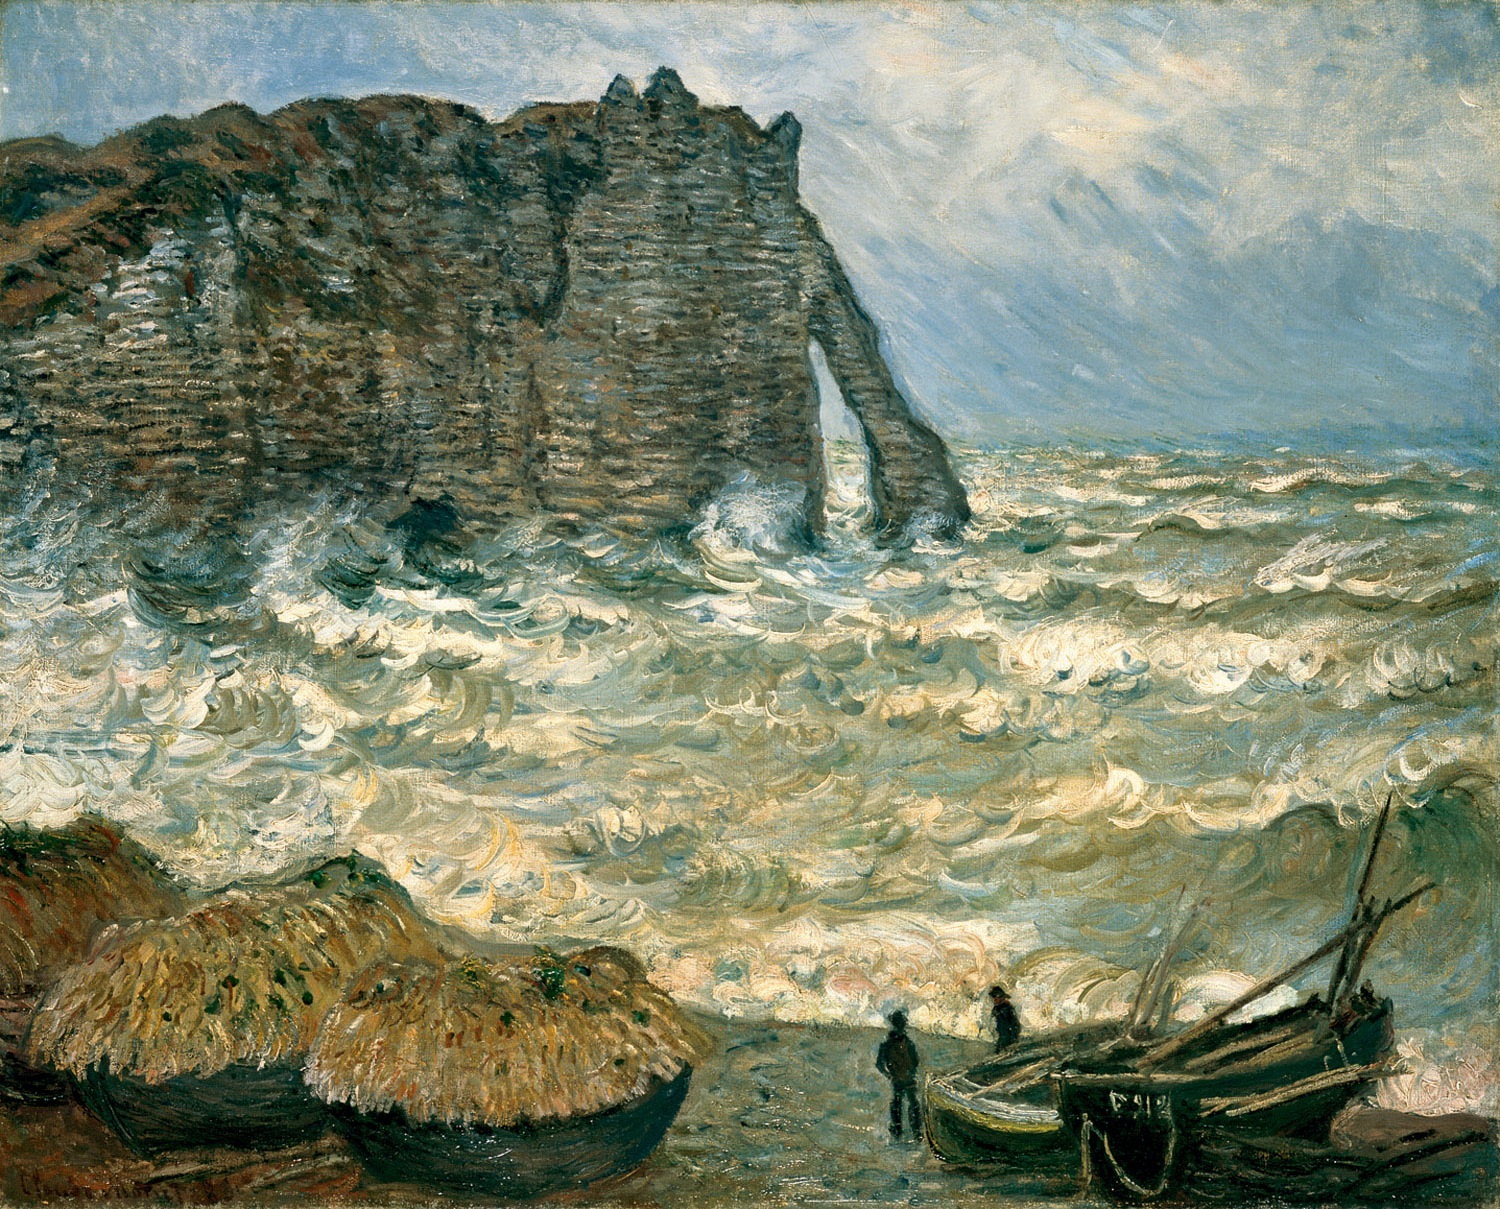 Rough Sea at Etretat by Claude Monet - 1883 - 81x 100 cm Musée des beaux-arts de Lyon